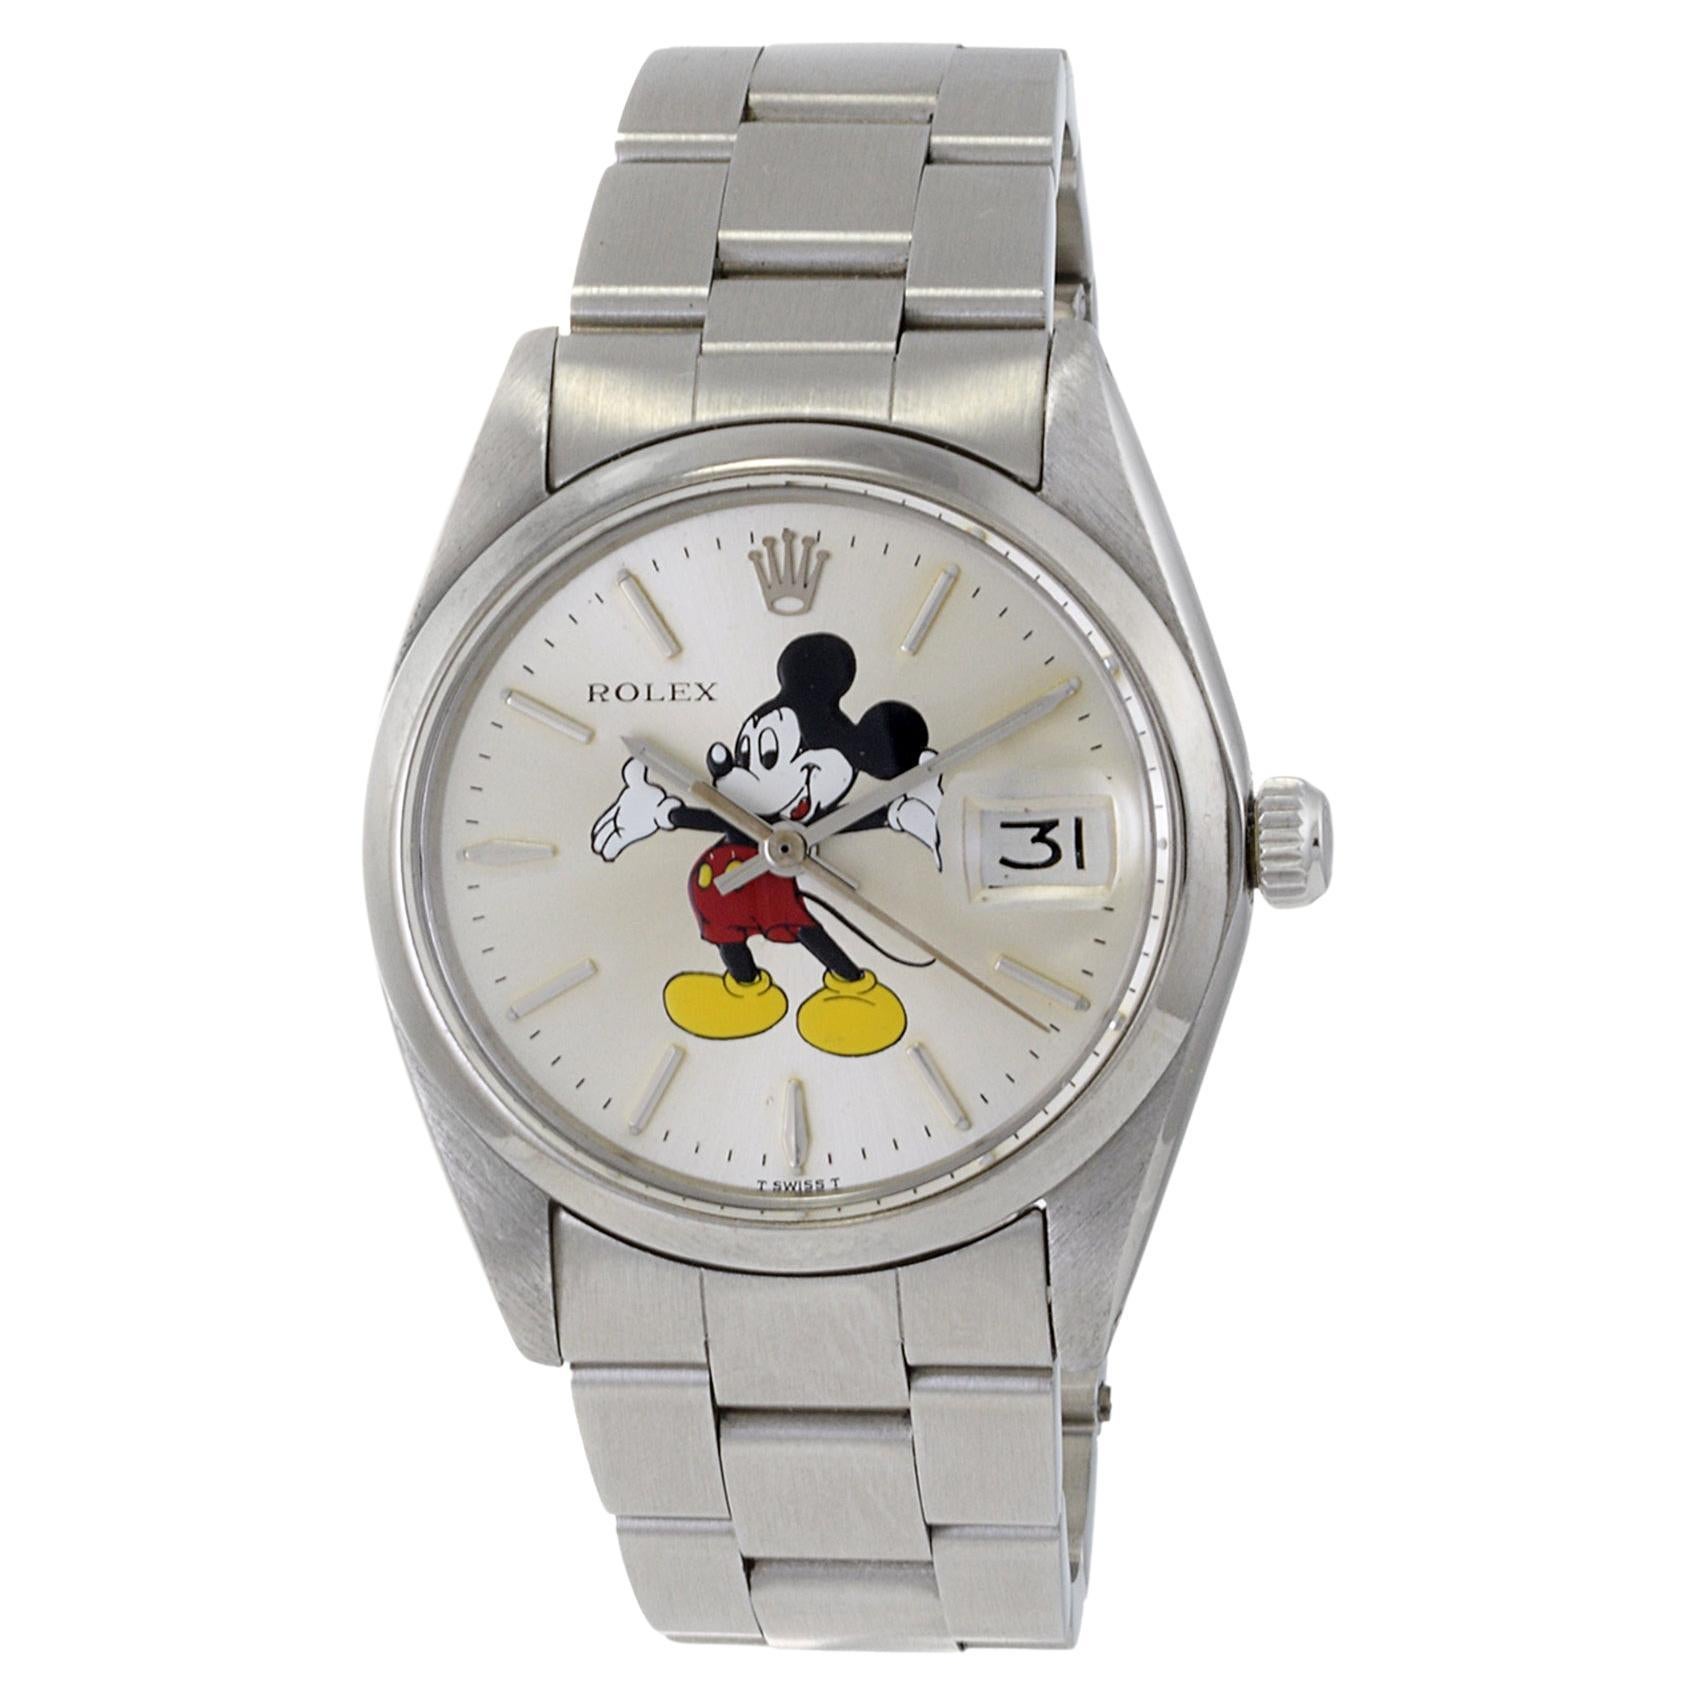 Rolex Oyster Date avec cadran personnalisé Mickey Mouse Référence 6694